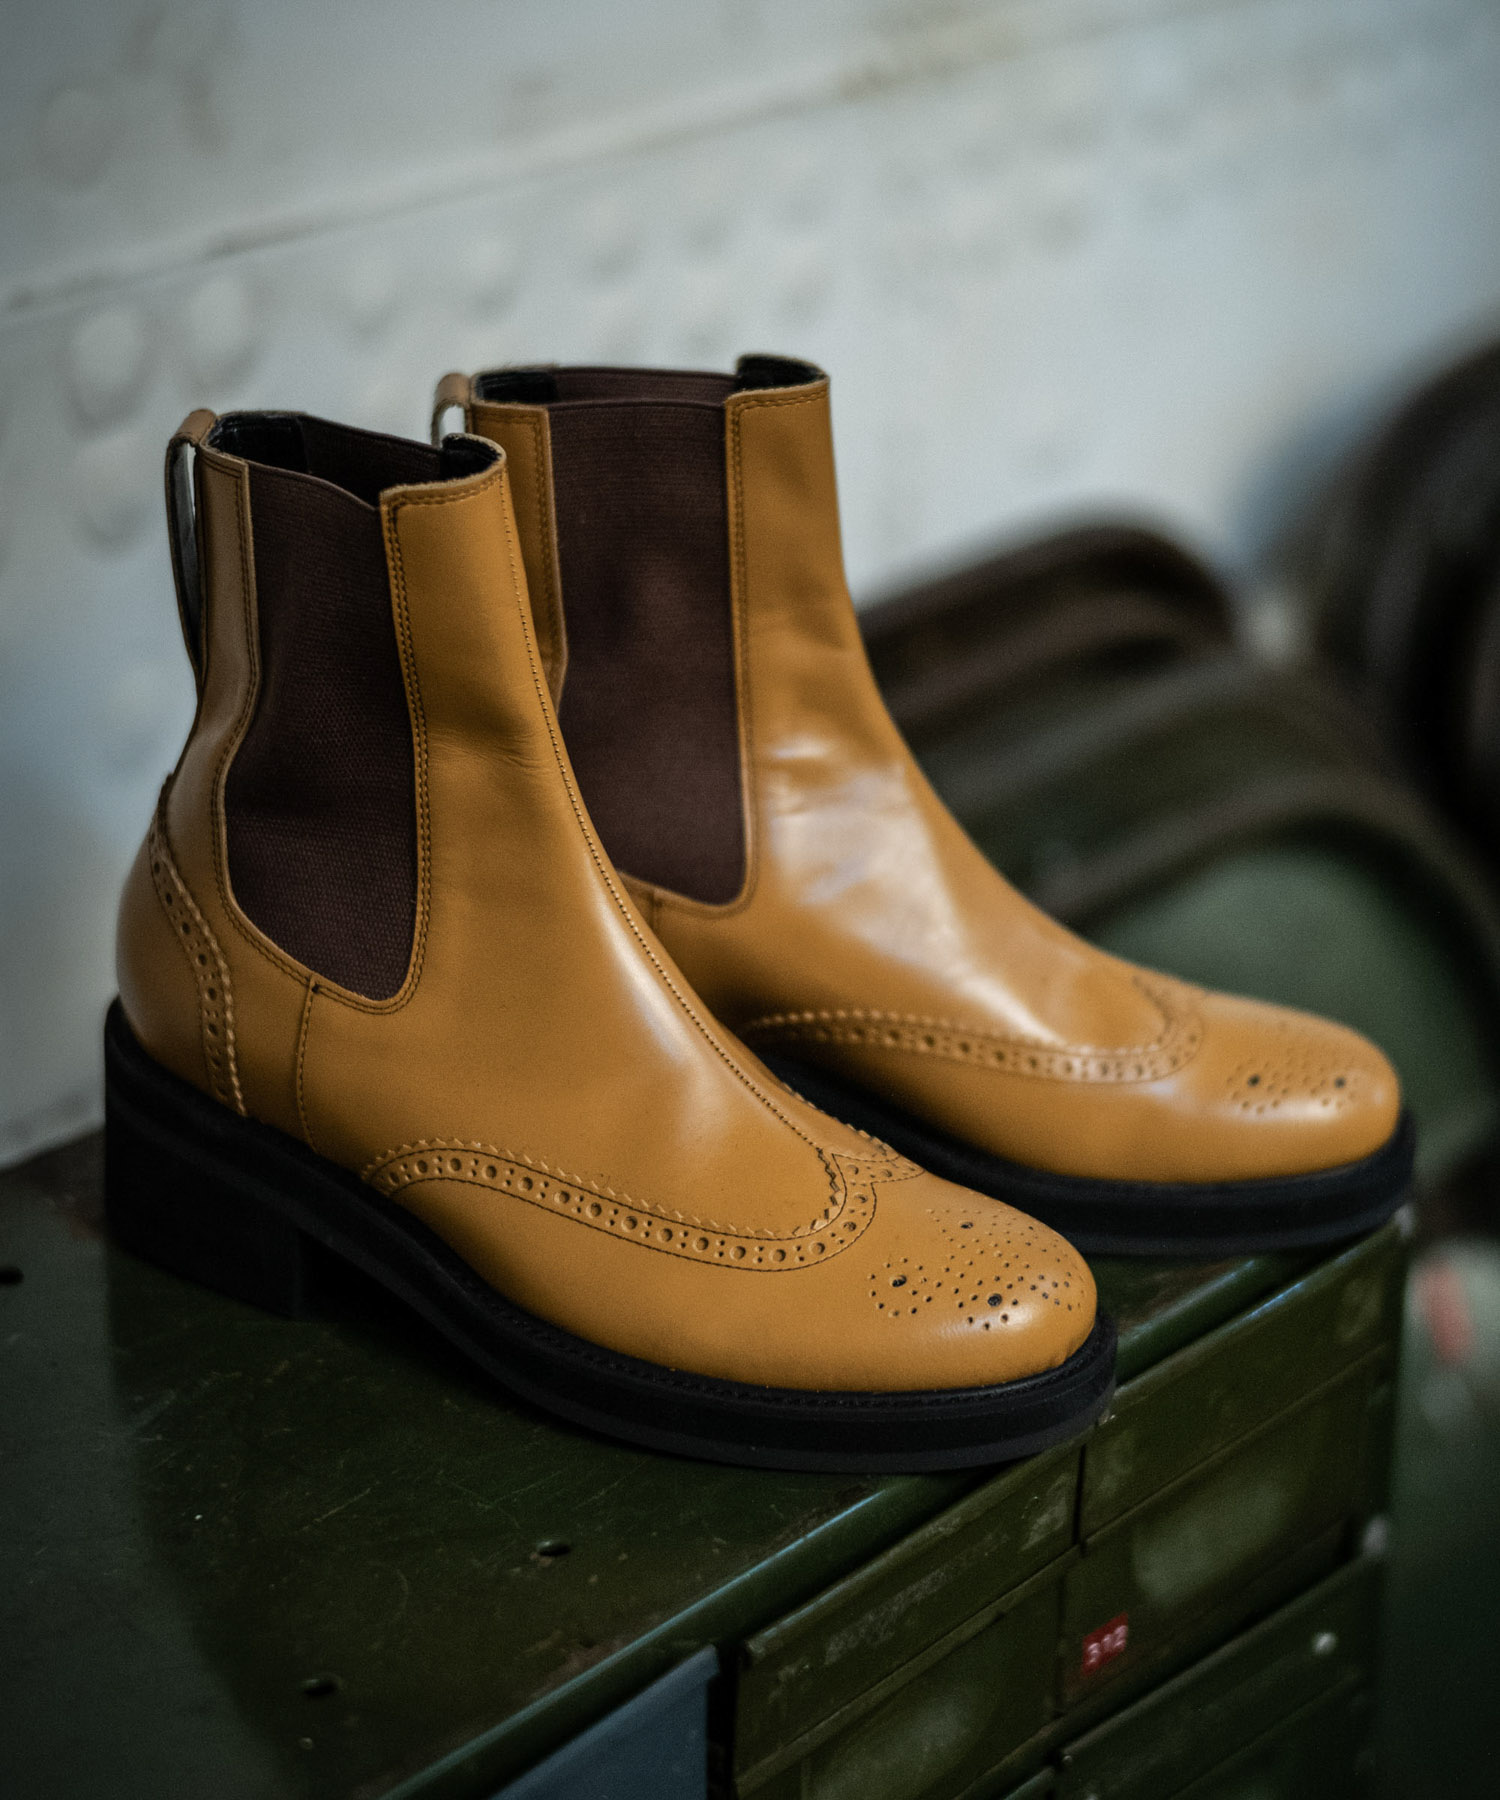 Gotha boots グラム 最大75%OFFクーポン glamb 期間限定の激安セール